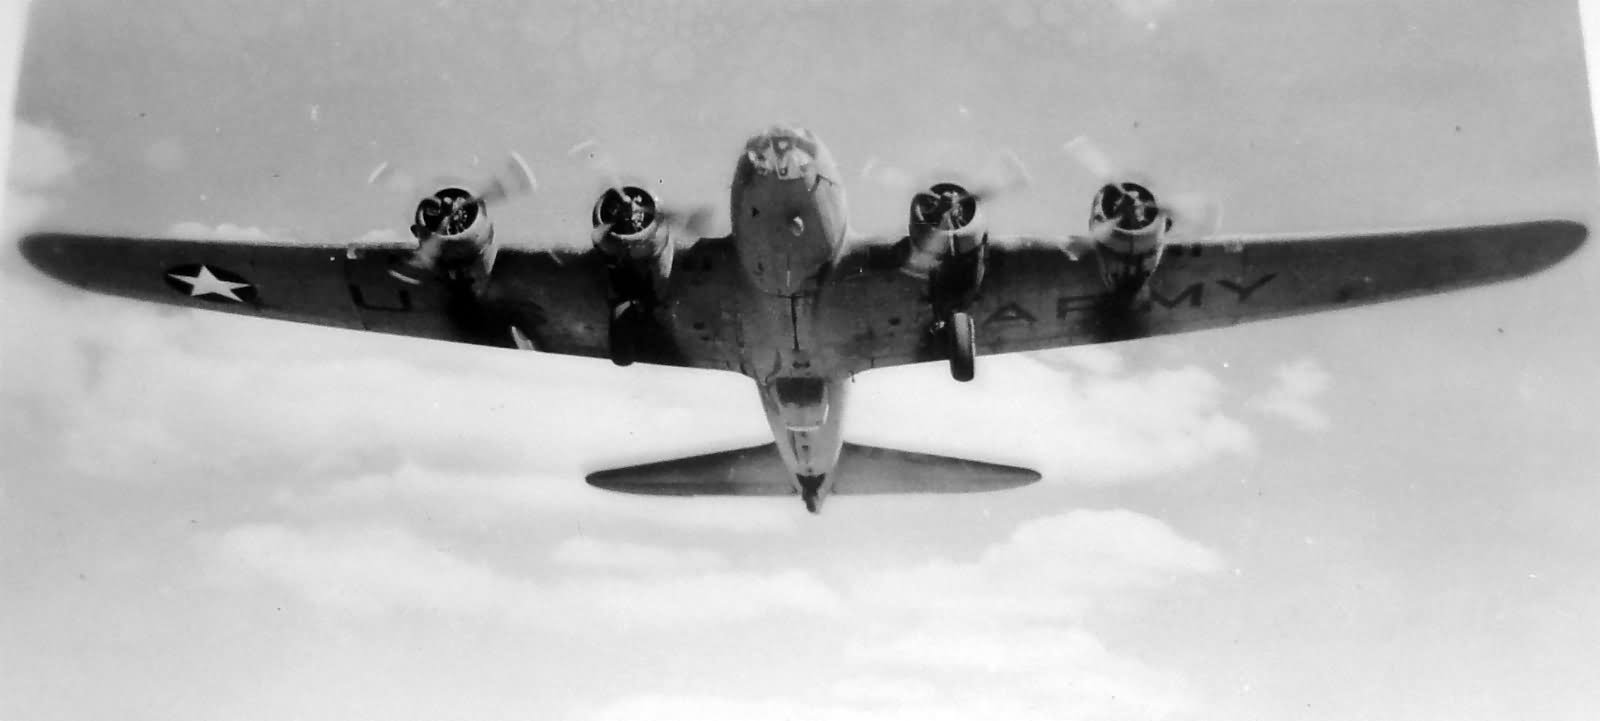 Por su alcance y su capacidad de carga, el B-17 era un arma magnÃ­fica con la que atacar las bases japonesas, pero cuando despegÃ³, esa maÃ±ana, no fue para eso. 